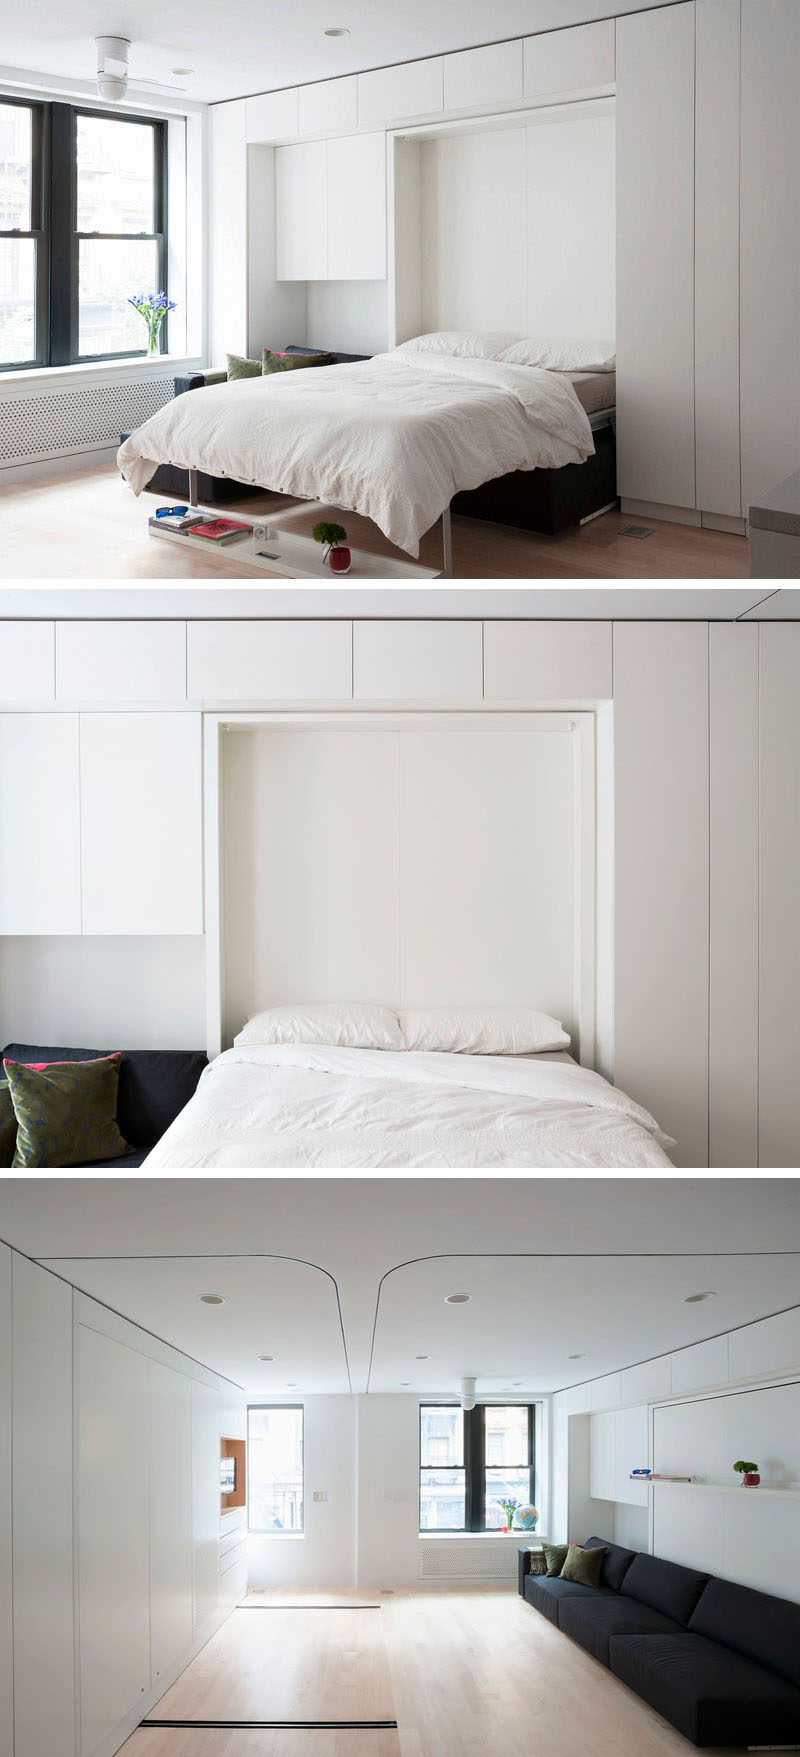 Идеи дизайна спальни - 8 способов создать идеальное окружение кровати с хранением // Храните свою кровать - Если вам действительно мало места, подумайте об использовании кровати Мерфи. Когда они не используются, вы даже не можете сказать, что они есть, и они гармонируют с мебелью.